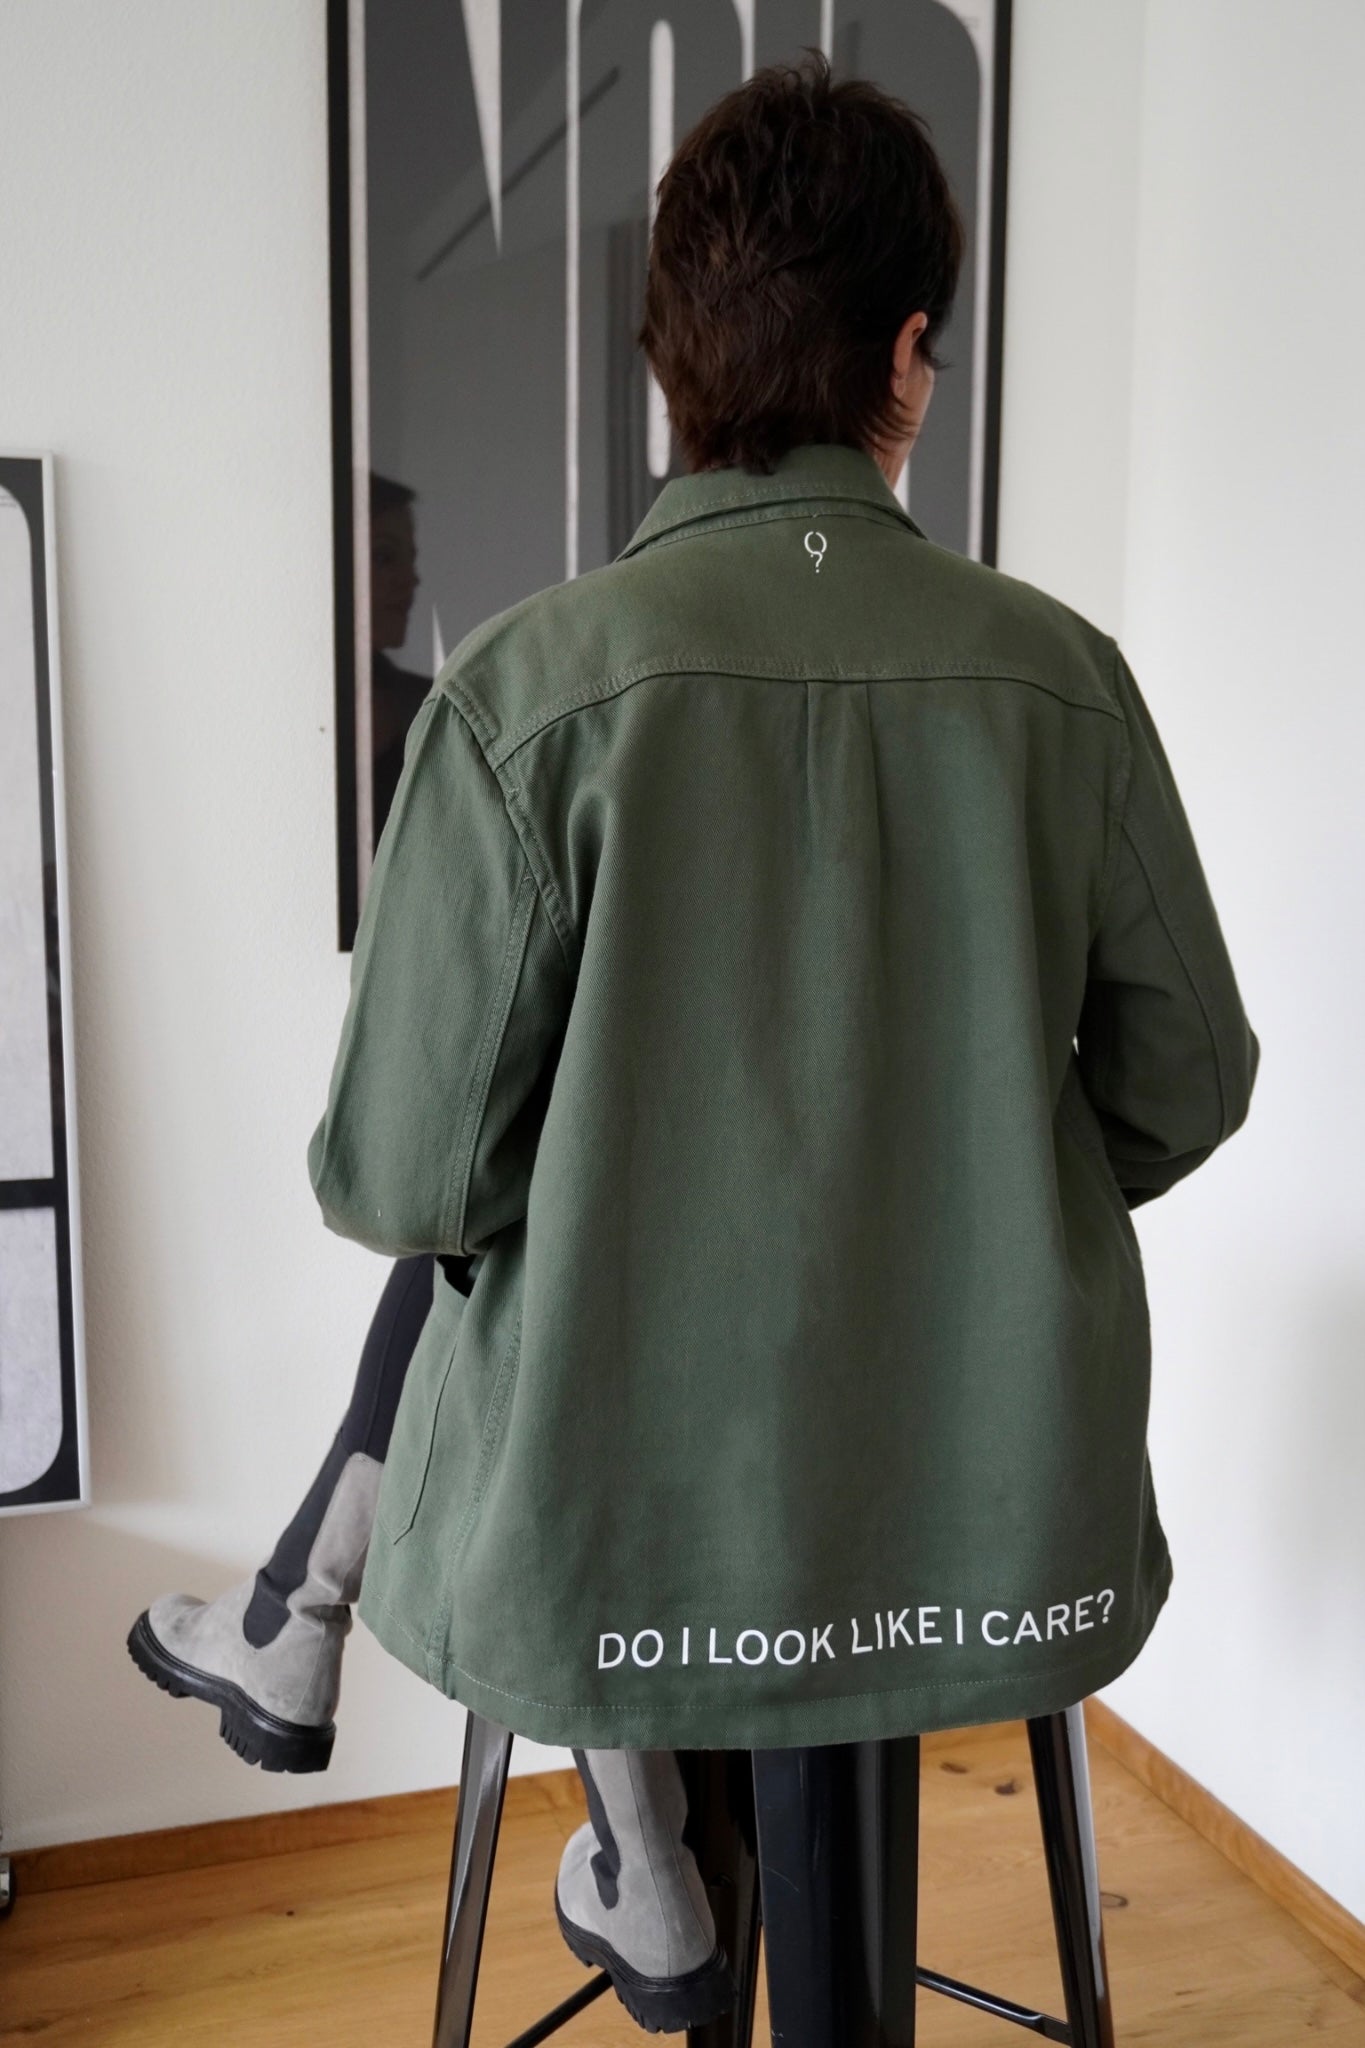 Daily Jacket 'DO I LOOK LIKE I CARE?' - OBLIVIOUS?